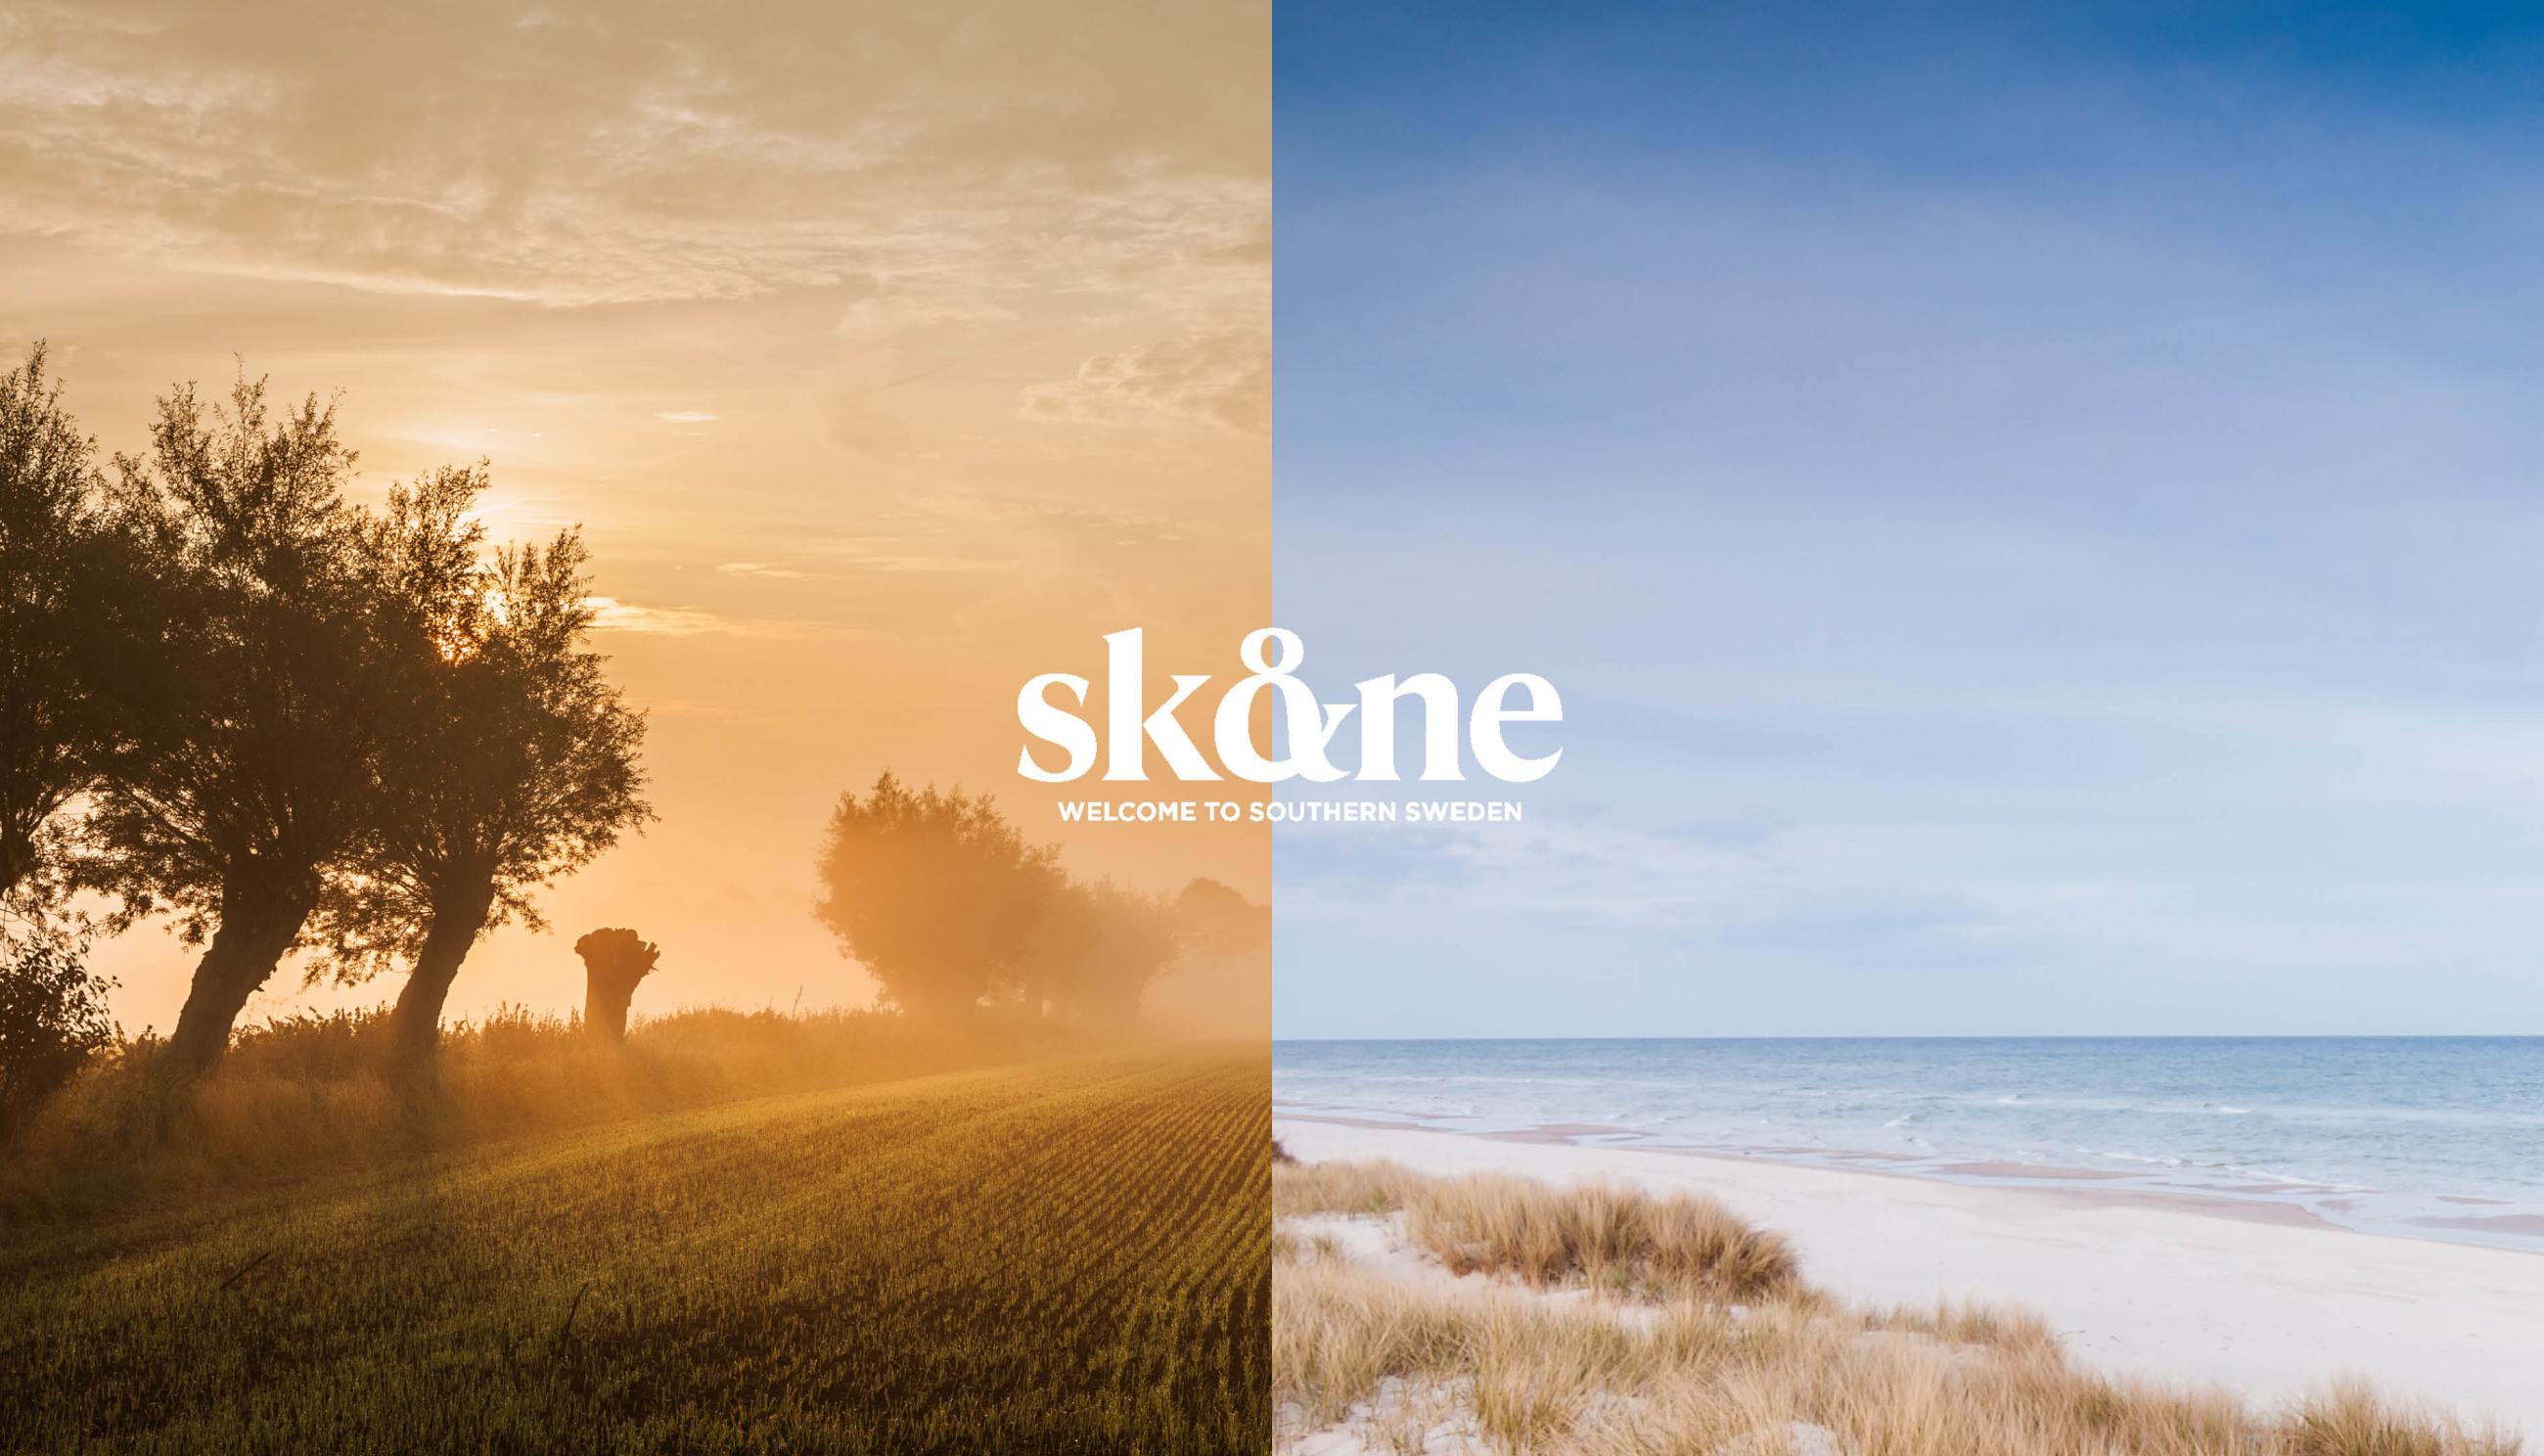 Visit Skåne frontpage header logo